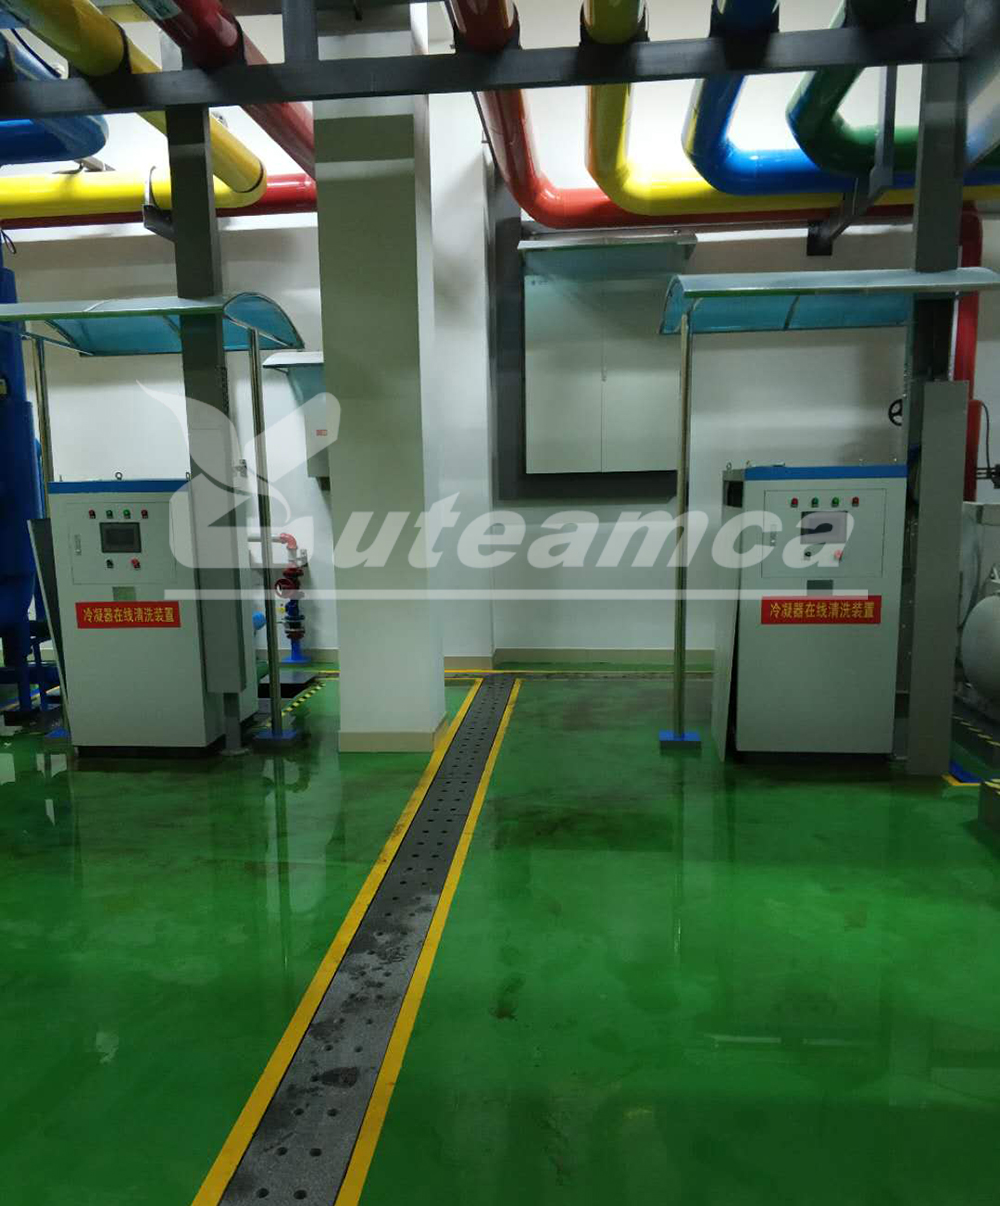 中国移动山东济南数据中心冷凝器在线清洗装置调试完毕